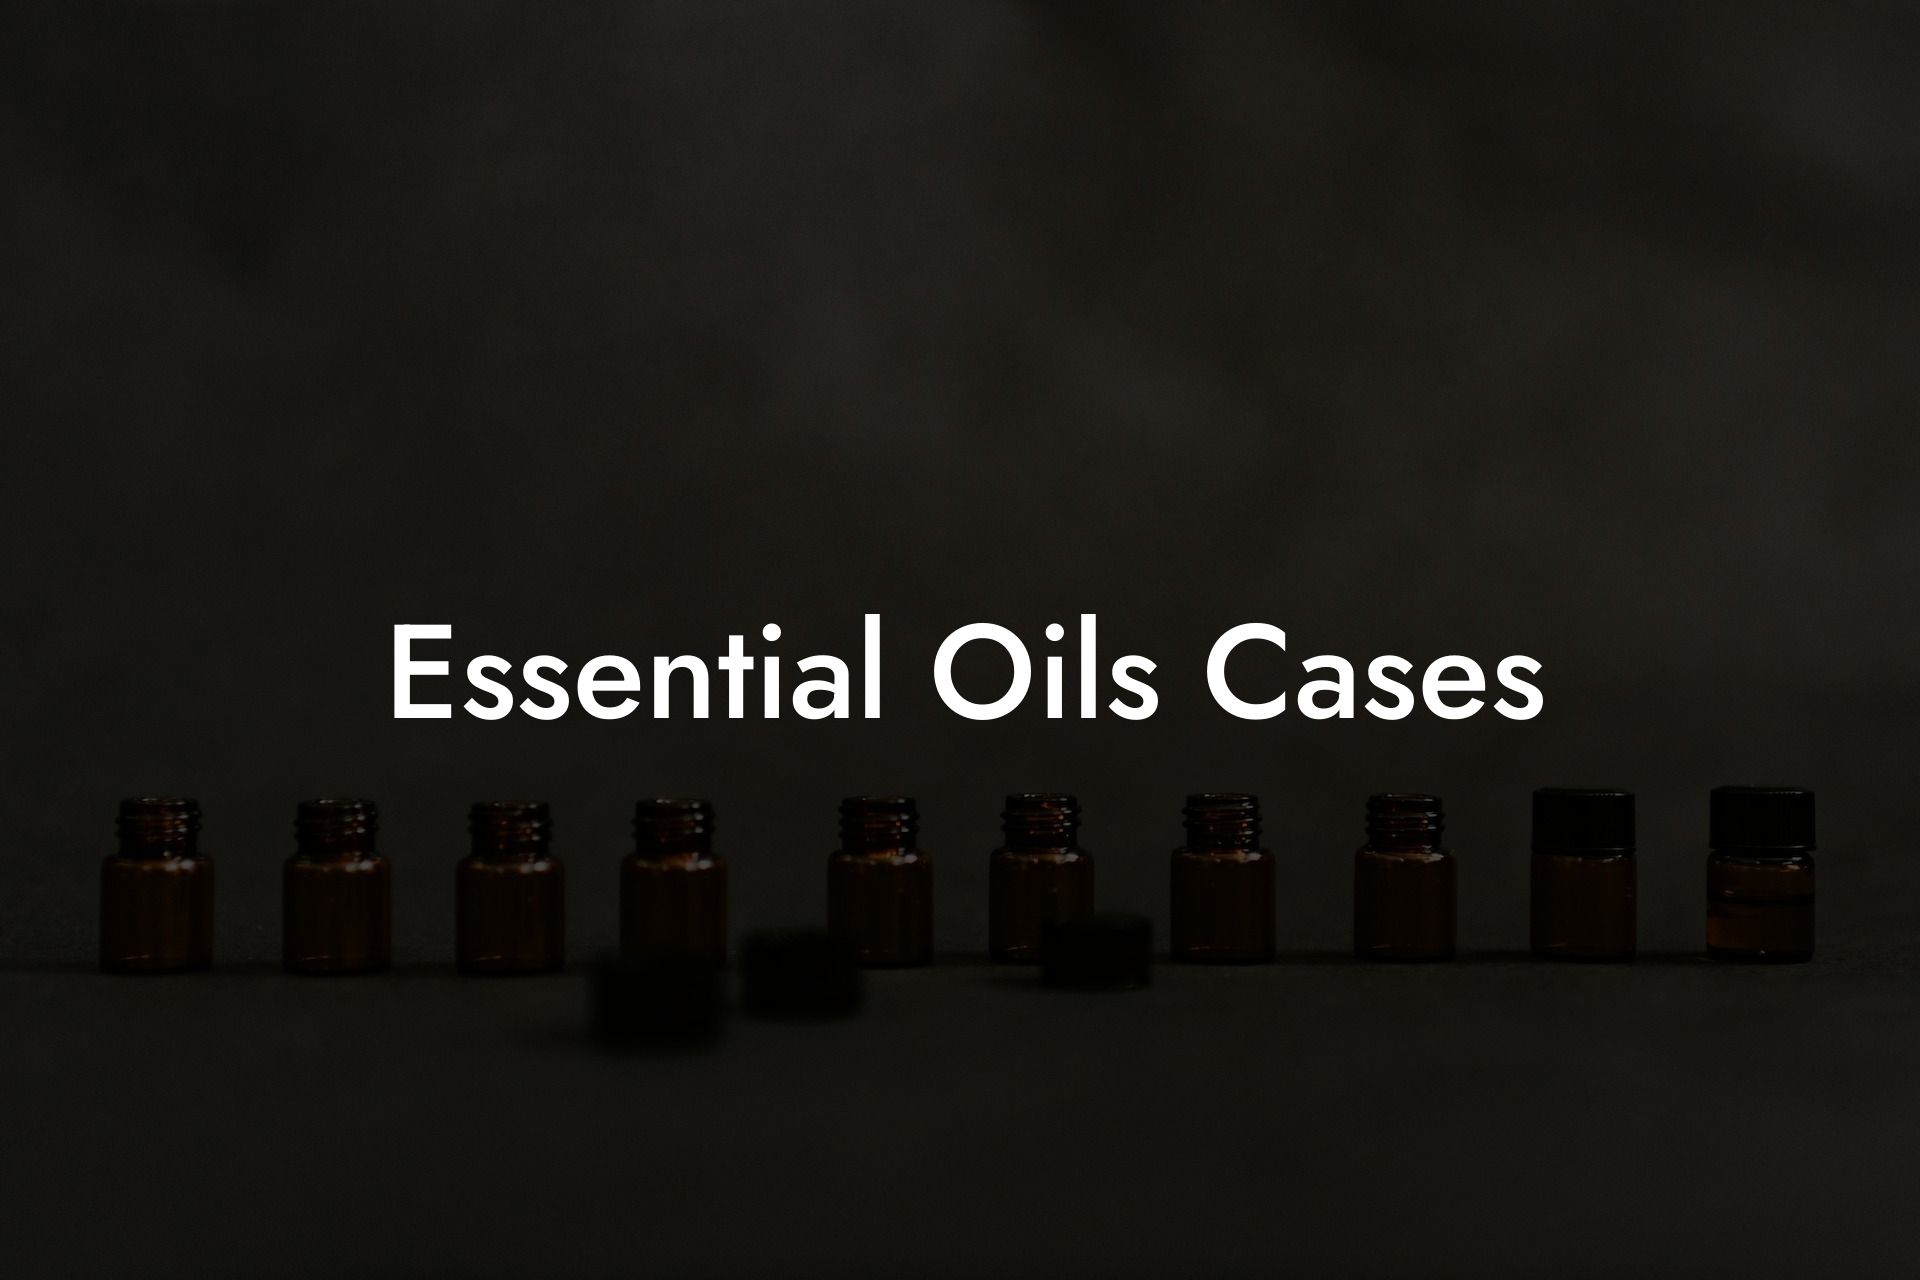 Essential Oils Cases